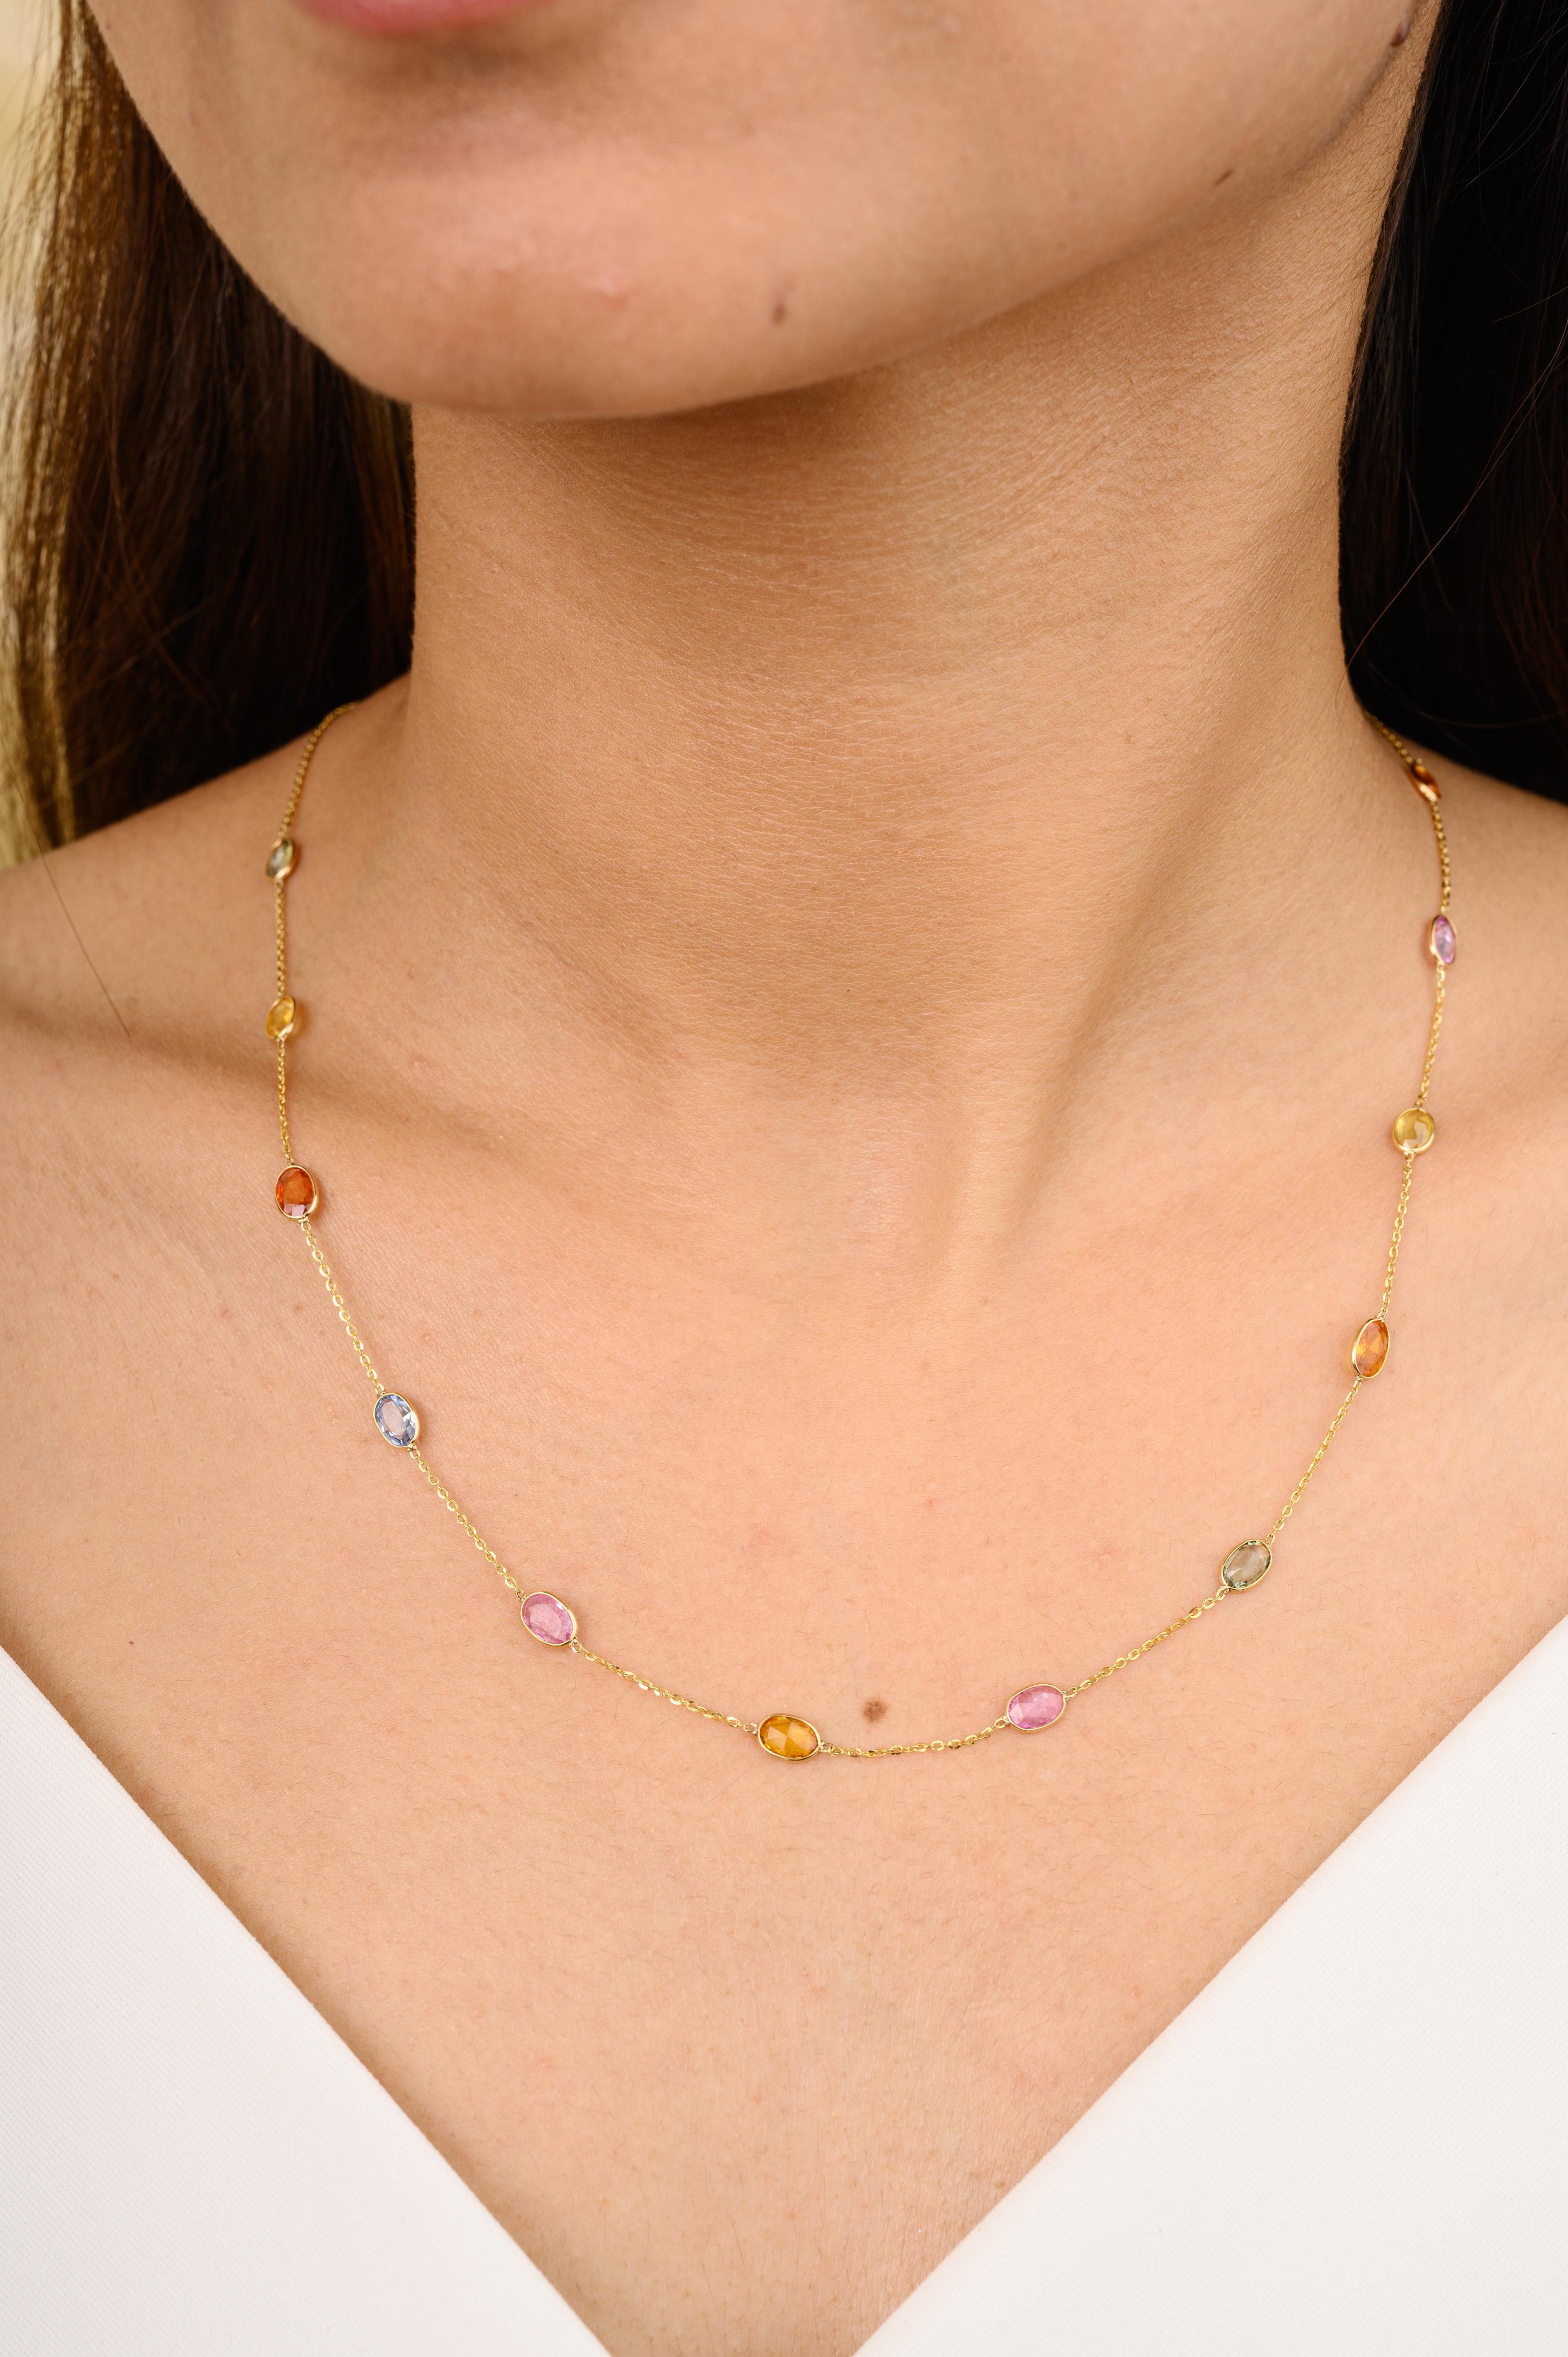 Zertifizierte Multi Sapphire Station Kette Halskette für Frauen in 18K Gold mit ovalem Schliff Multi Saphiren besetzt. Dieses atemberaubende Schmuckstück wertet einen Freizeitlook oder ein elegantes Outfit sofort auf. 
Der Saphir fördert die